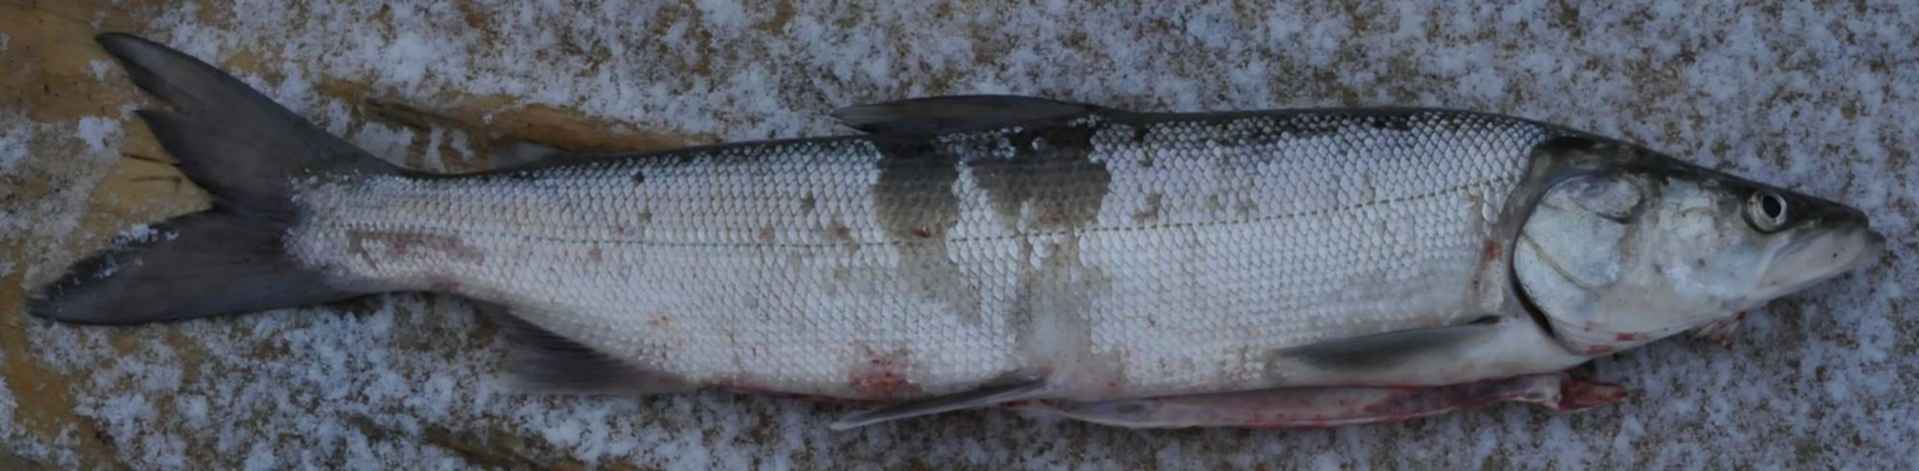 Белорыбица камчатская фото что это за рыба